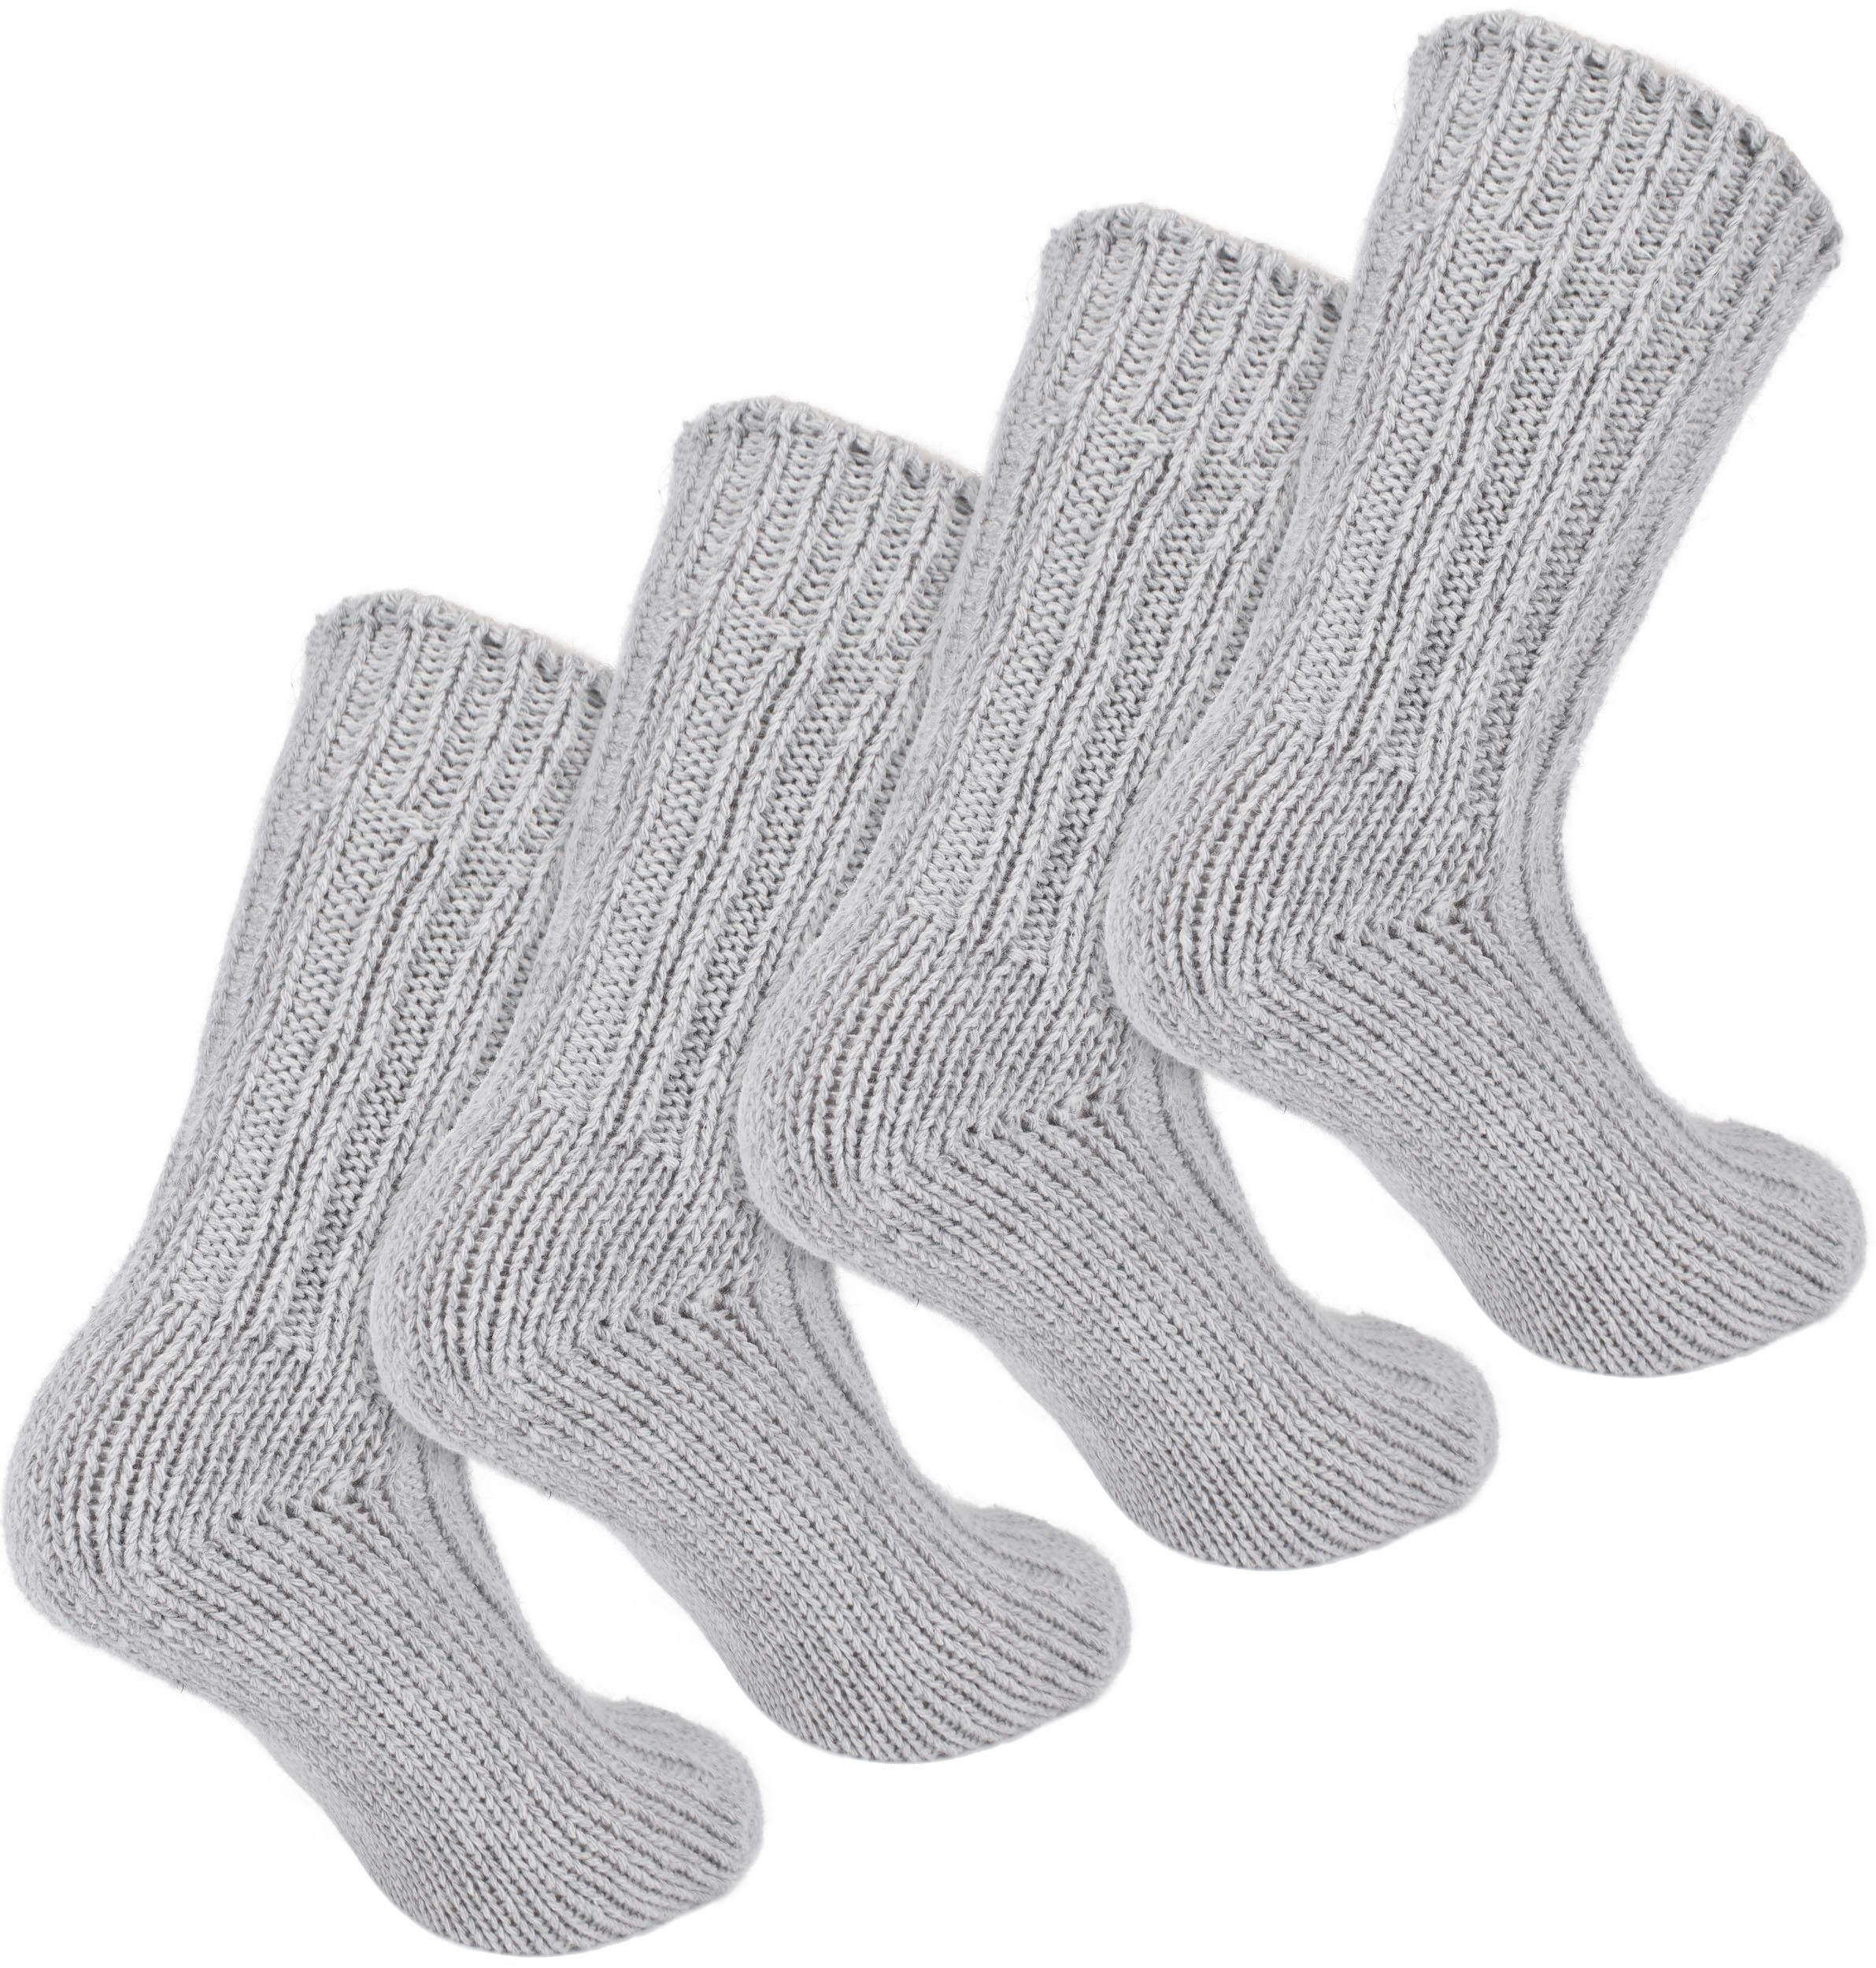 und Damen Stricksocken Winter - - mit Schafwolle Socken (2-Paar) Thermosocken BRUBAKER Set Grau Warm Wintersocken Flauschig Wollsocken und - Herren für